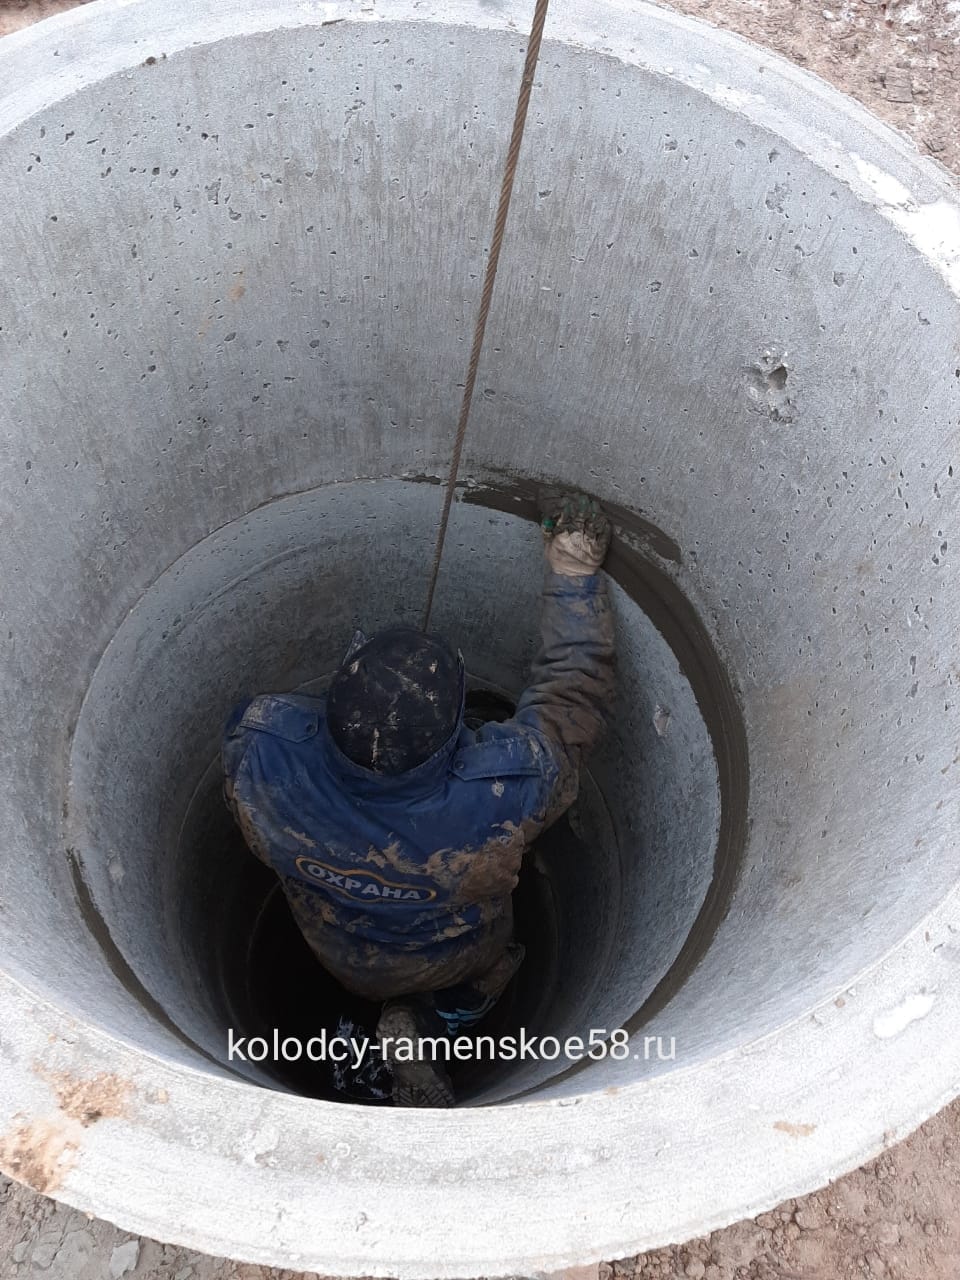 заделка швов между кольцами цементным раствором колодца в Раменском районе